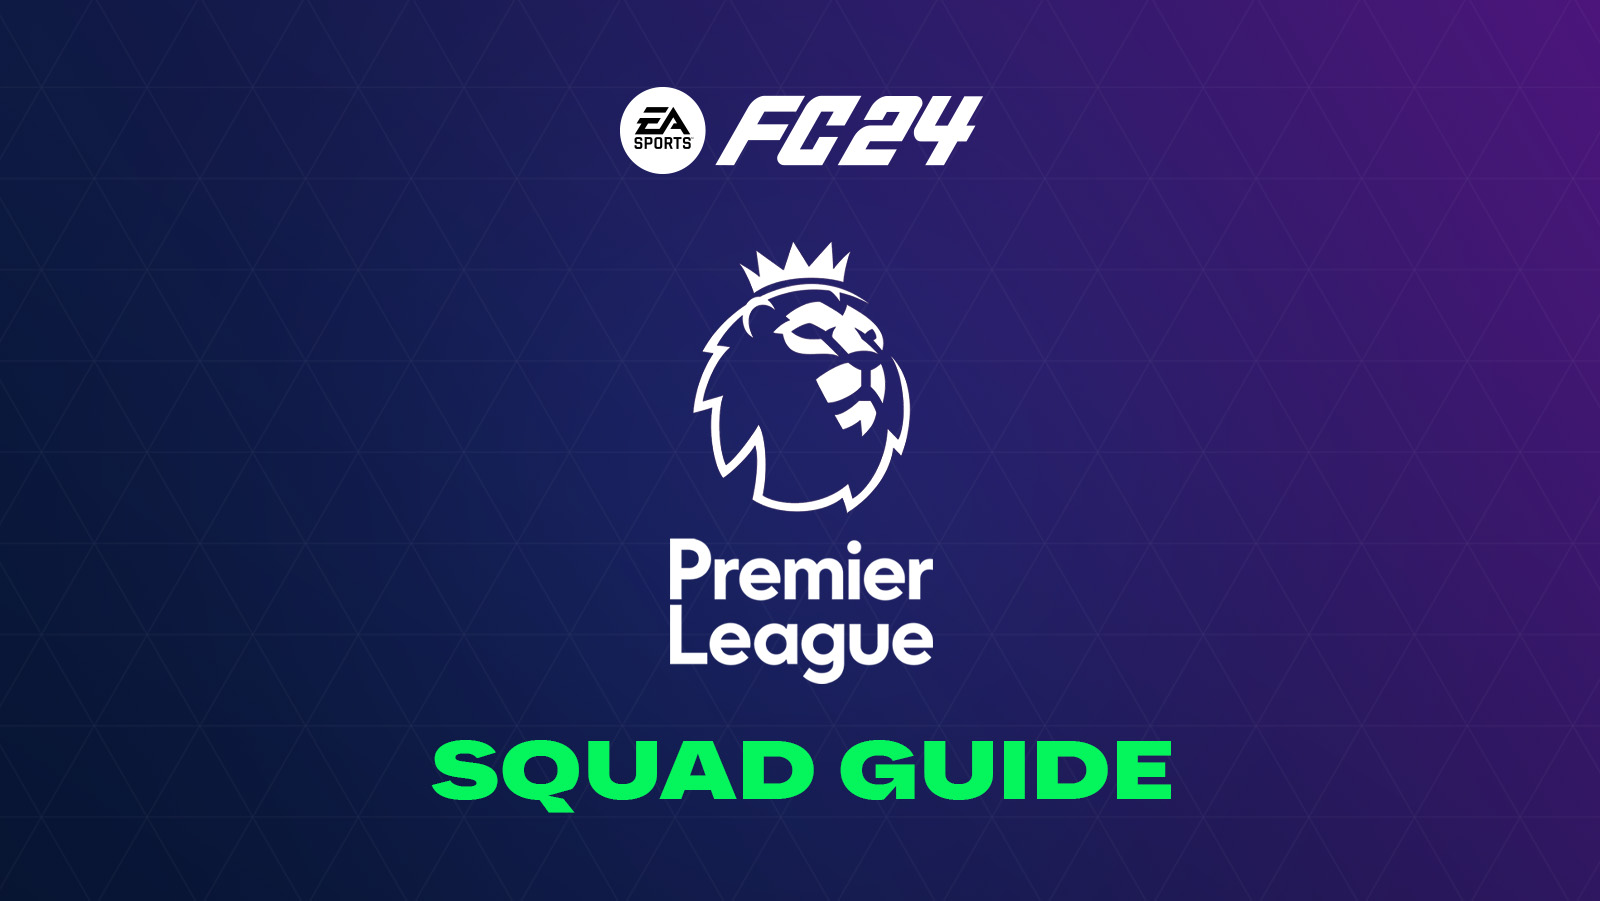 FIFA 23 Premier League Midfielders Detailed Guide